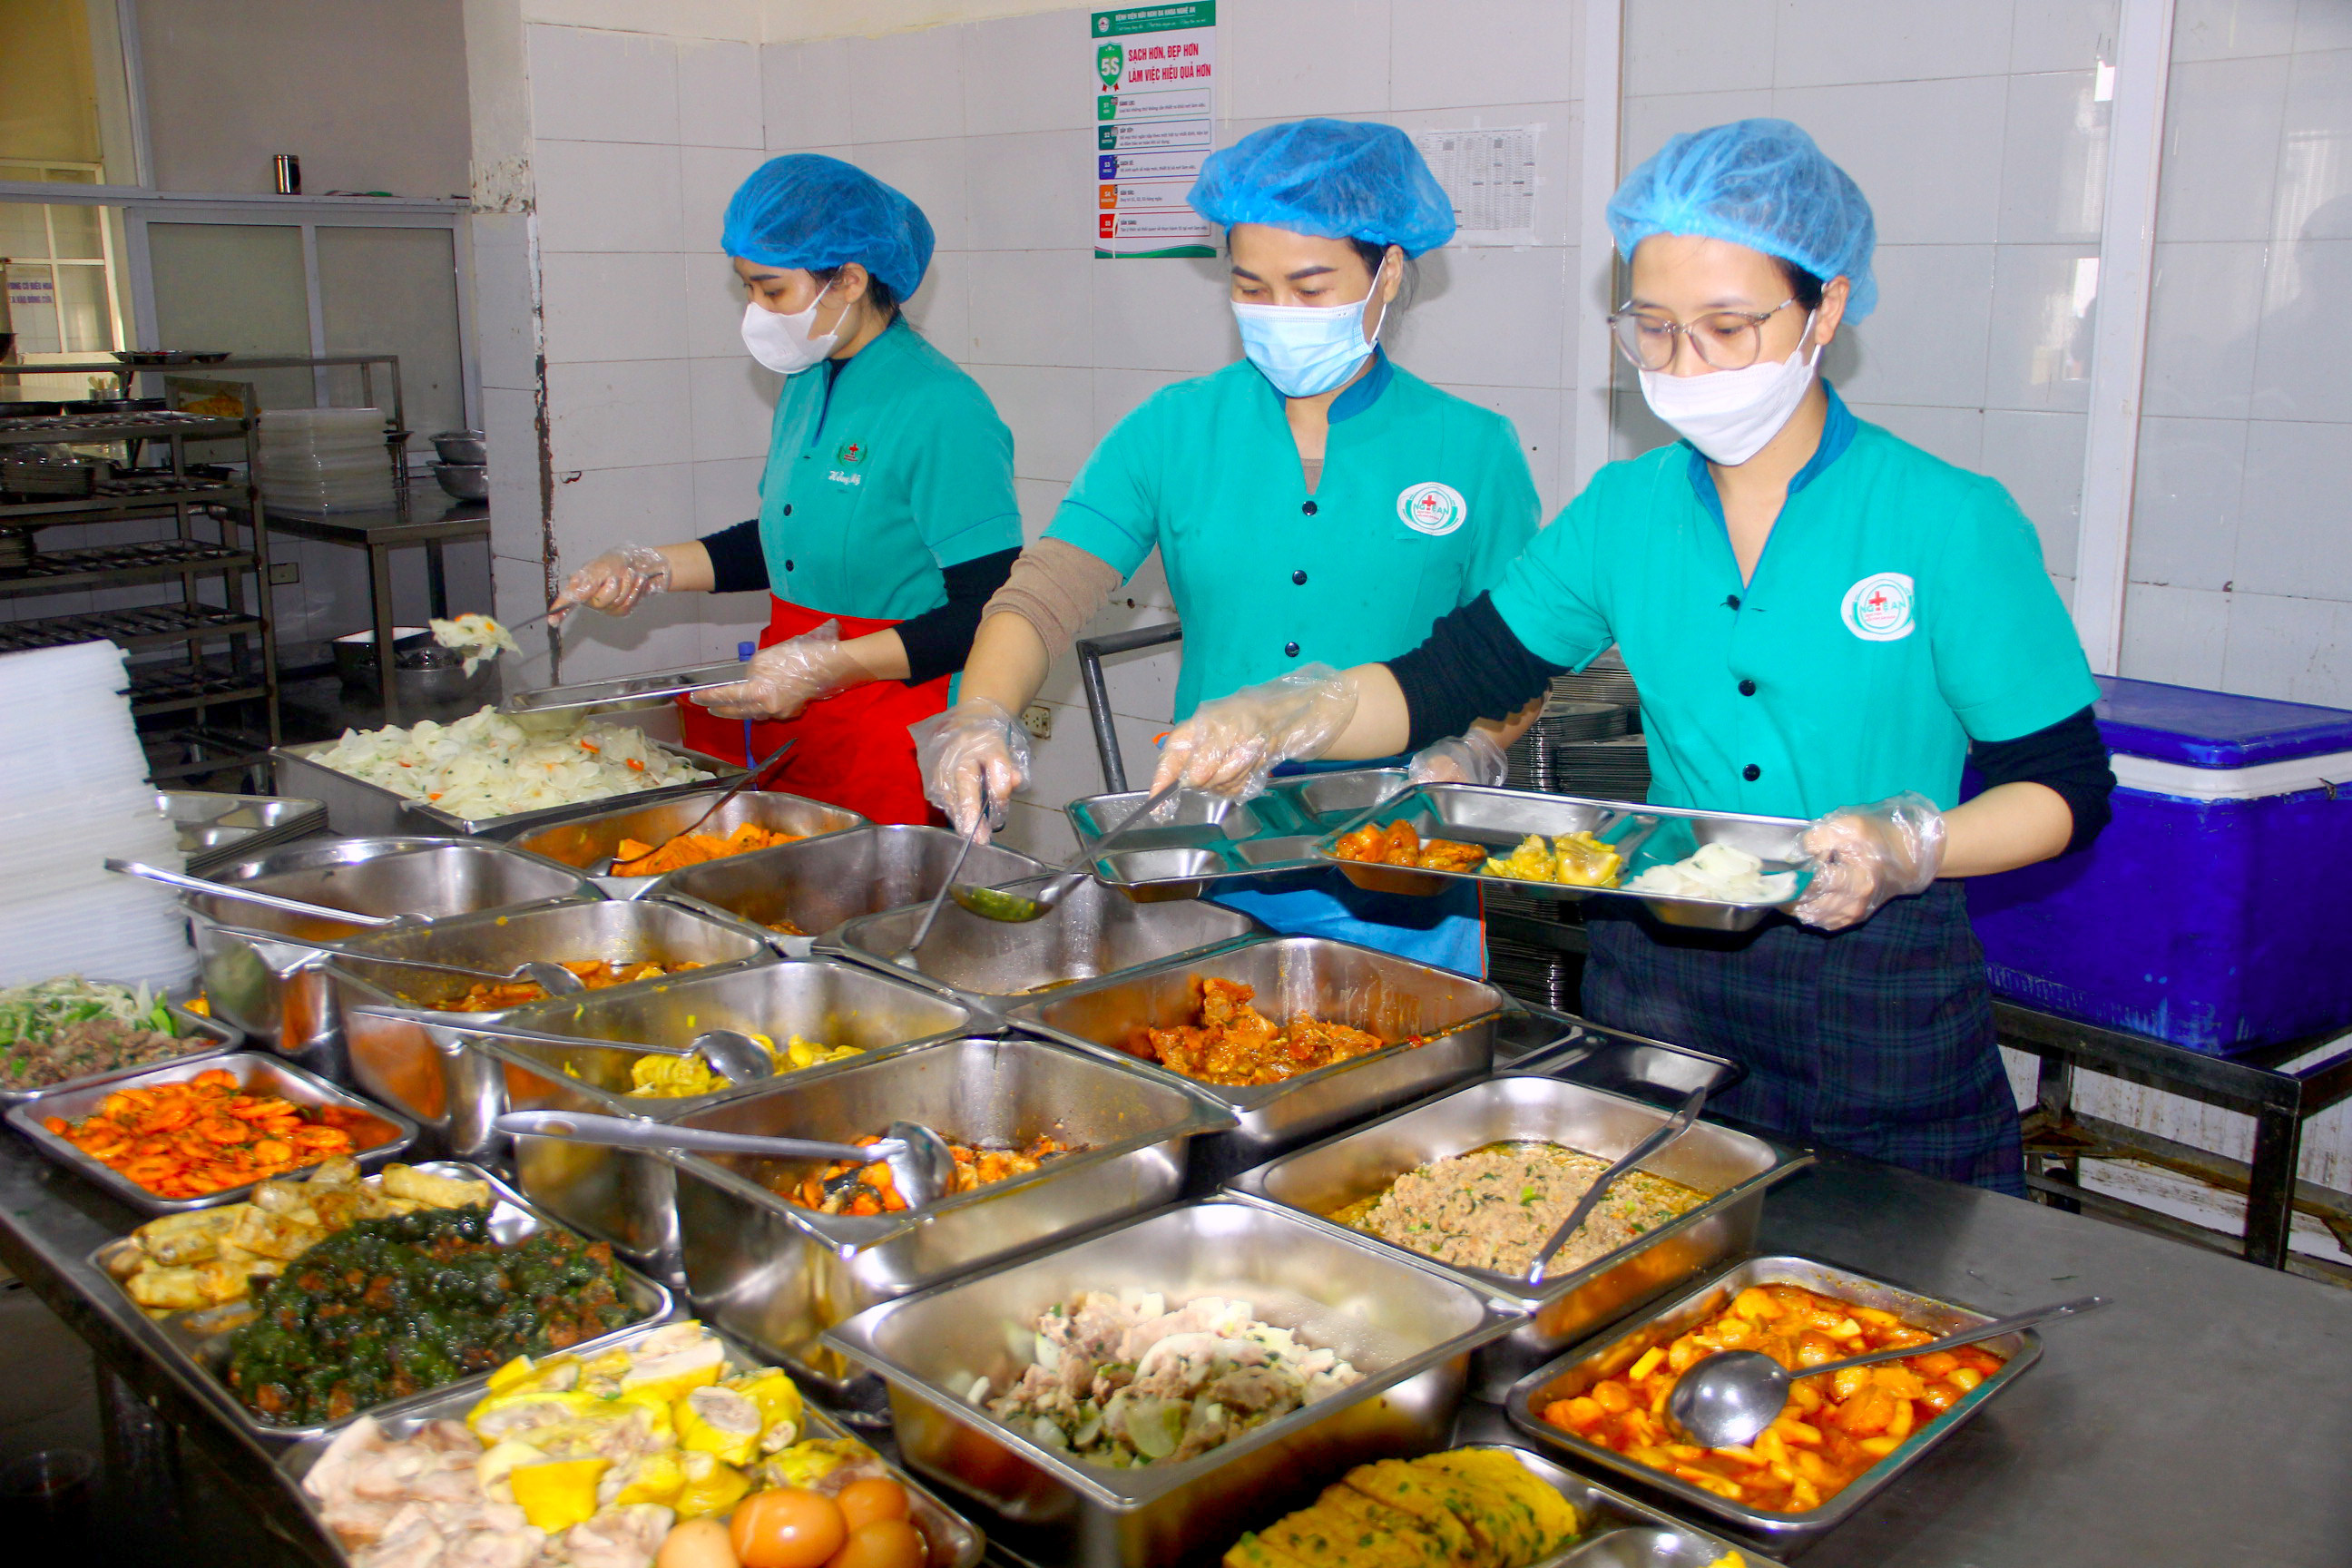 bna_các suất ăn trong bệnh viện phải đảm bảo đa dạng an toàn vệ sinh thực phẩm, giá cả hợp lý ảnh Quang An.jpg